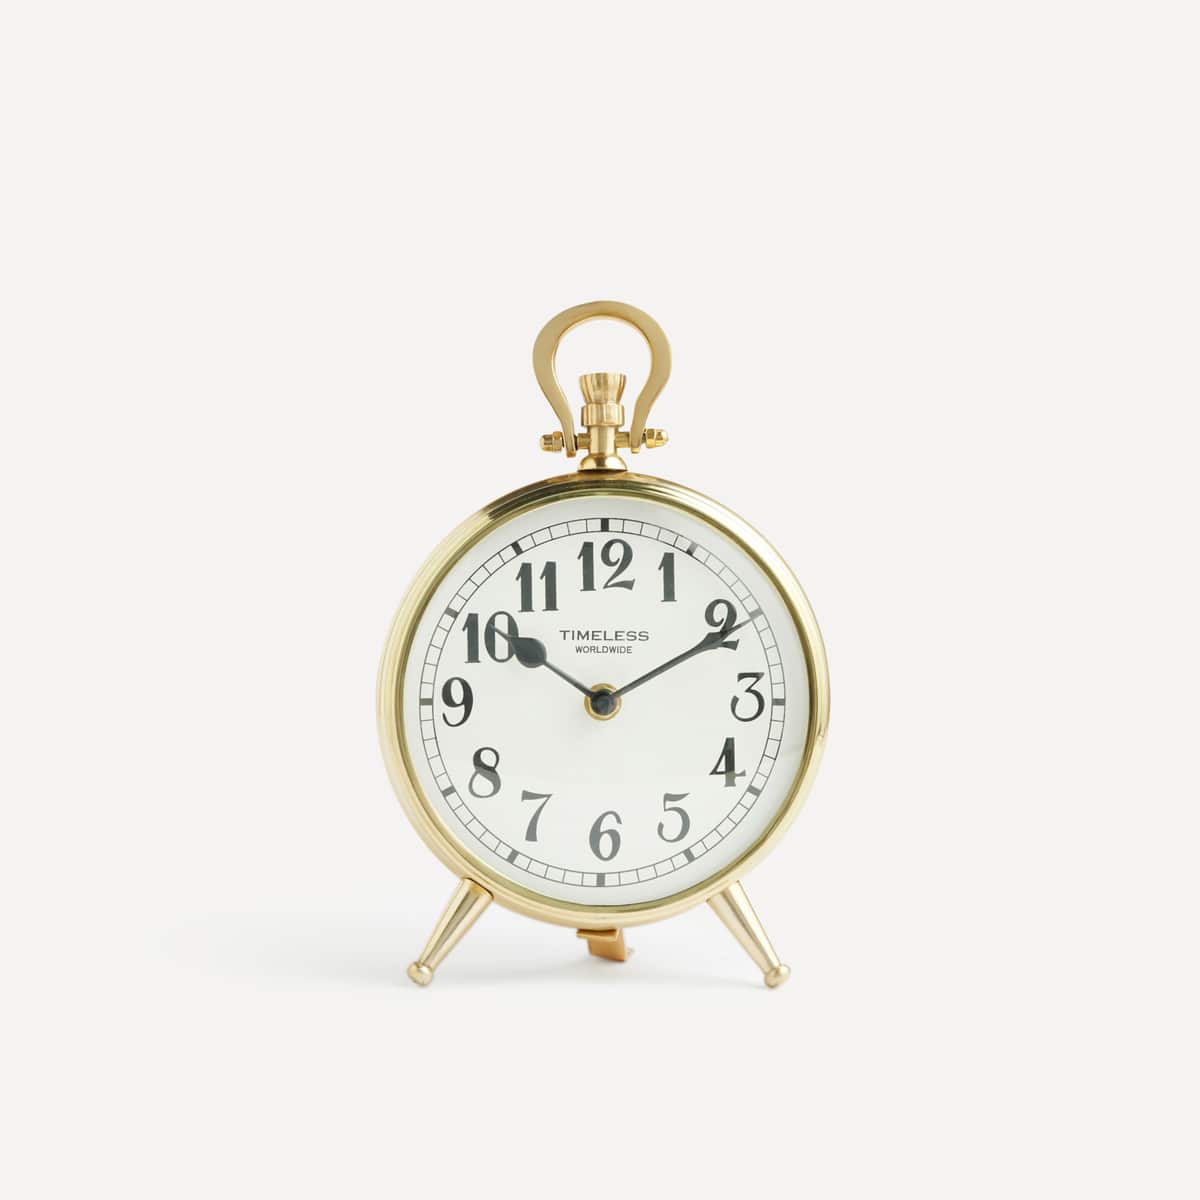 El Corte Inglés - Reloj De Mesa Dorado Parma Oro Barato